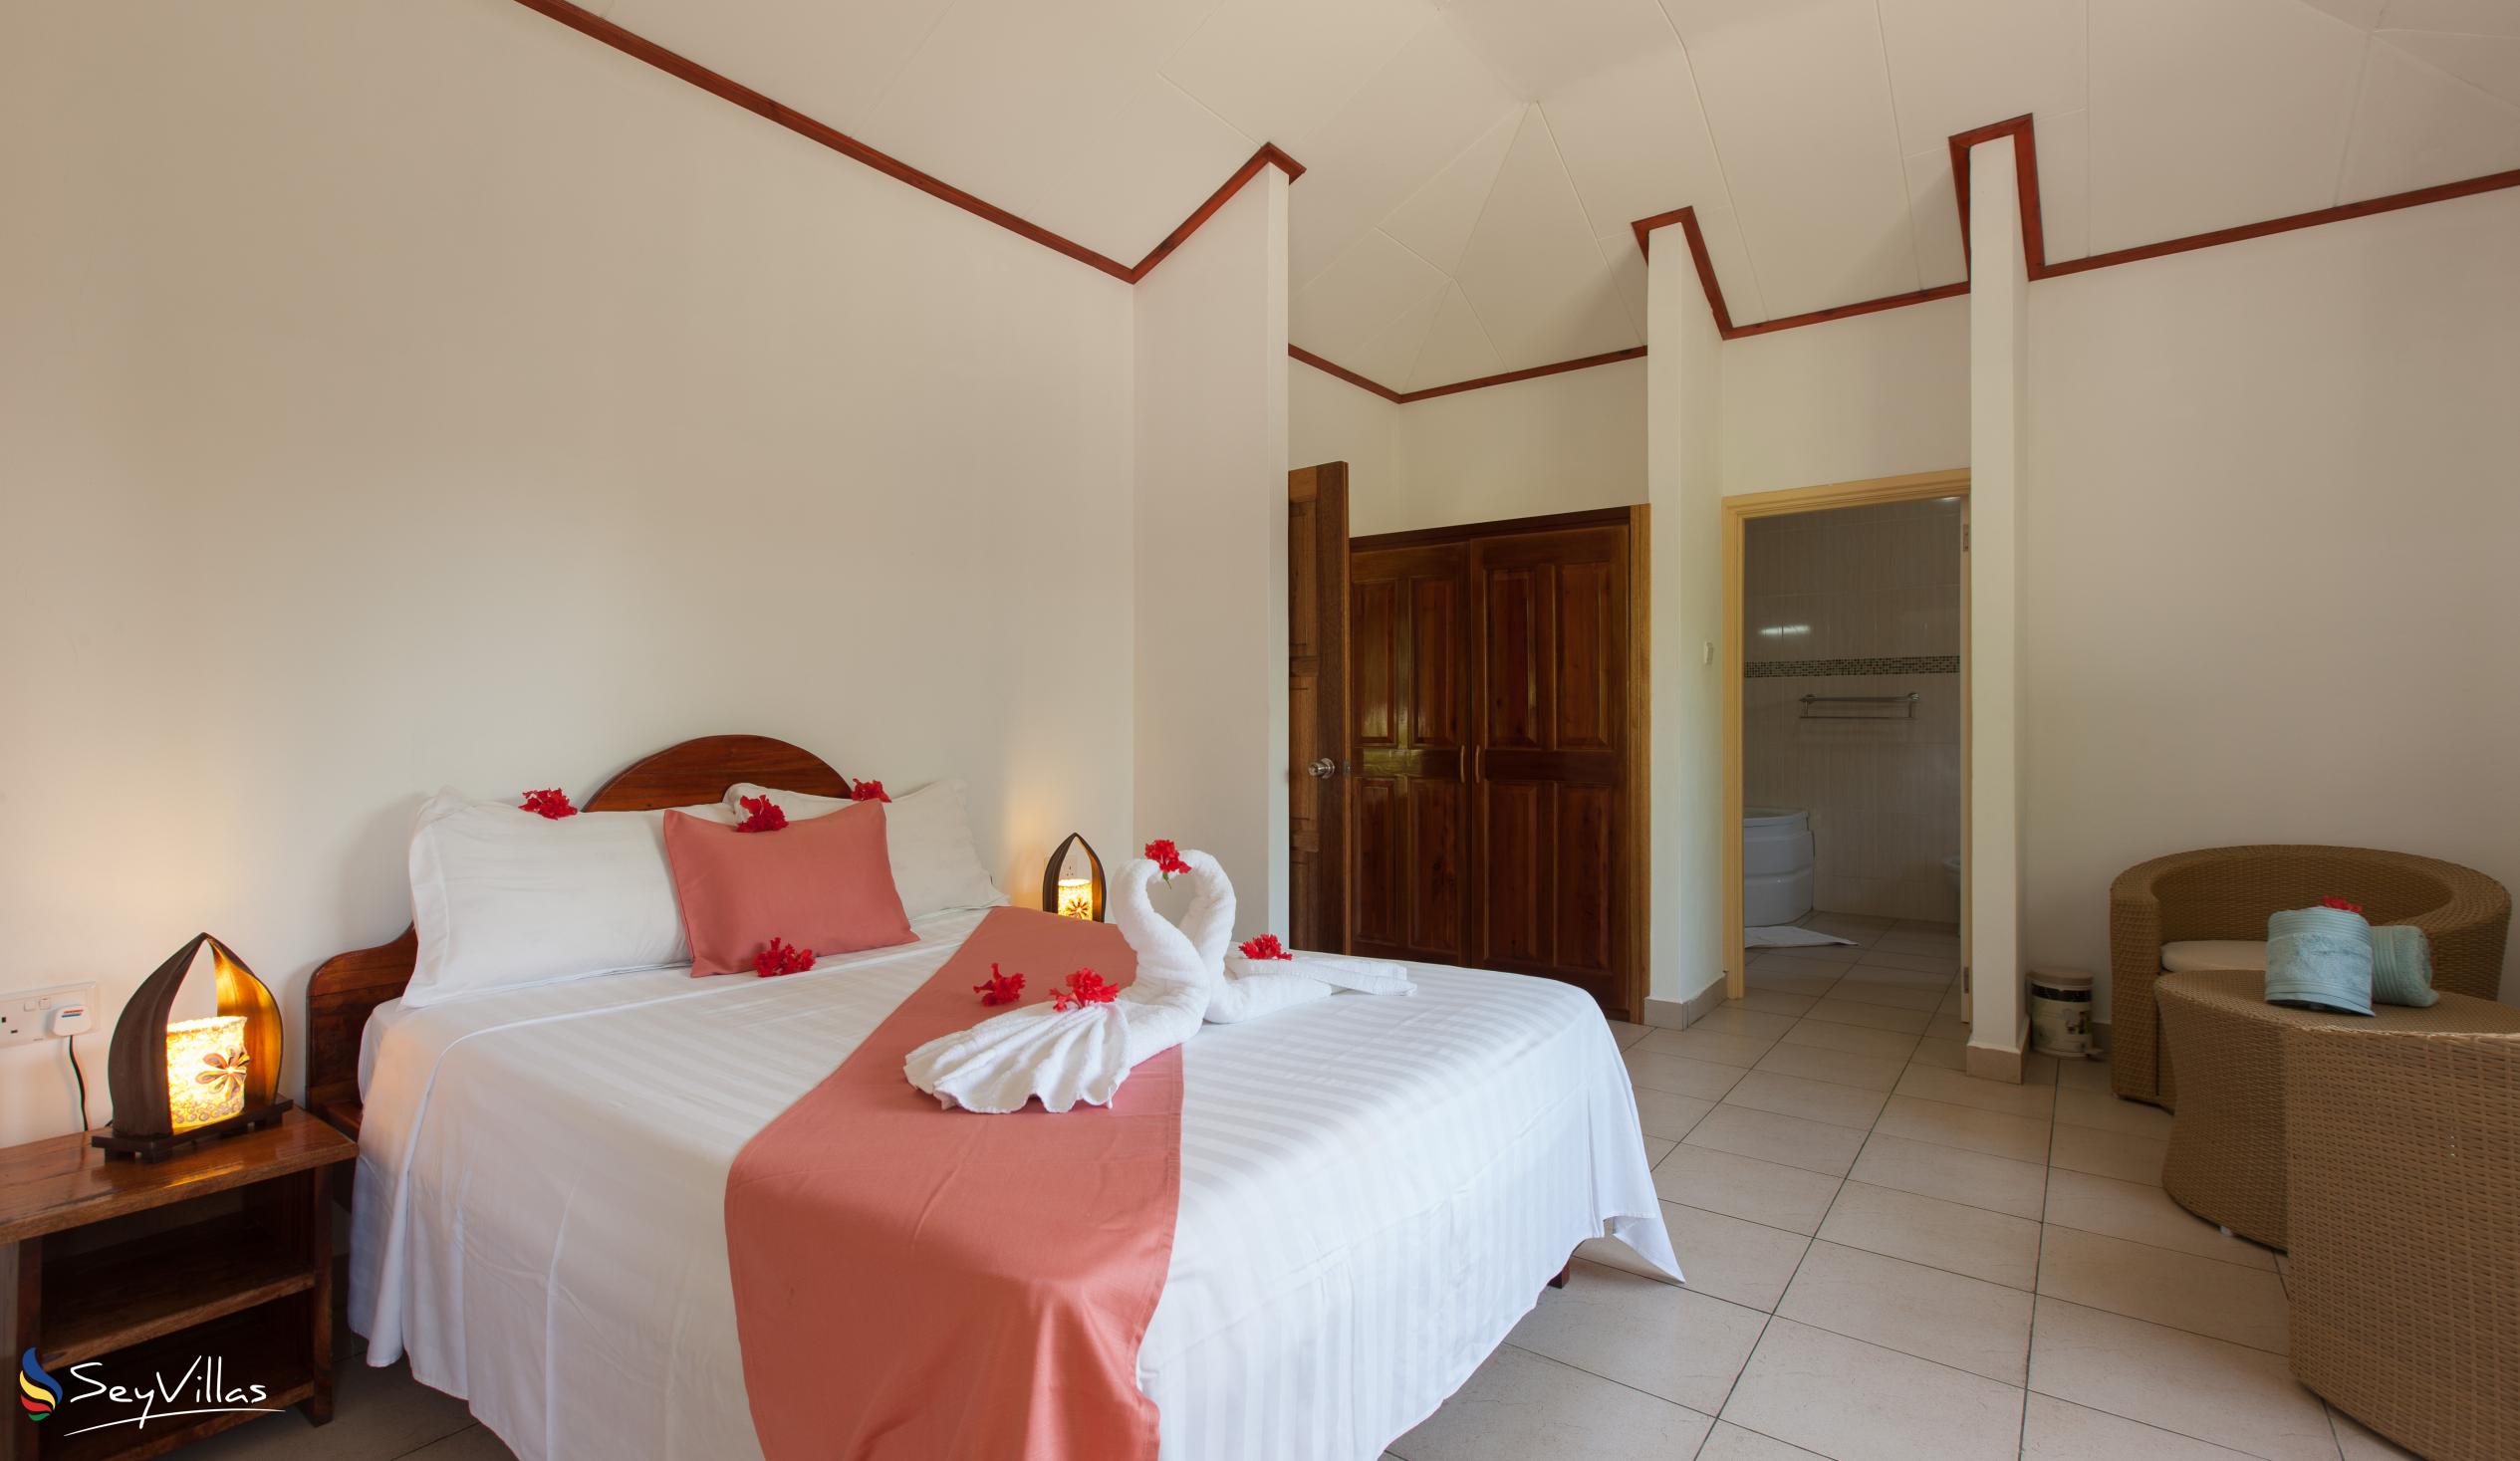 Foto 17: Hostellerie La Digue - Chalet 3 chambres - La Digue (Seychelles)